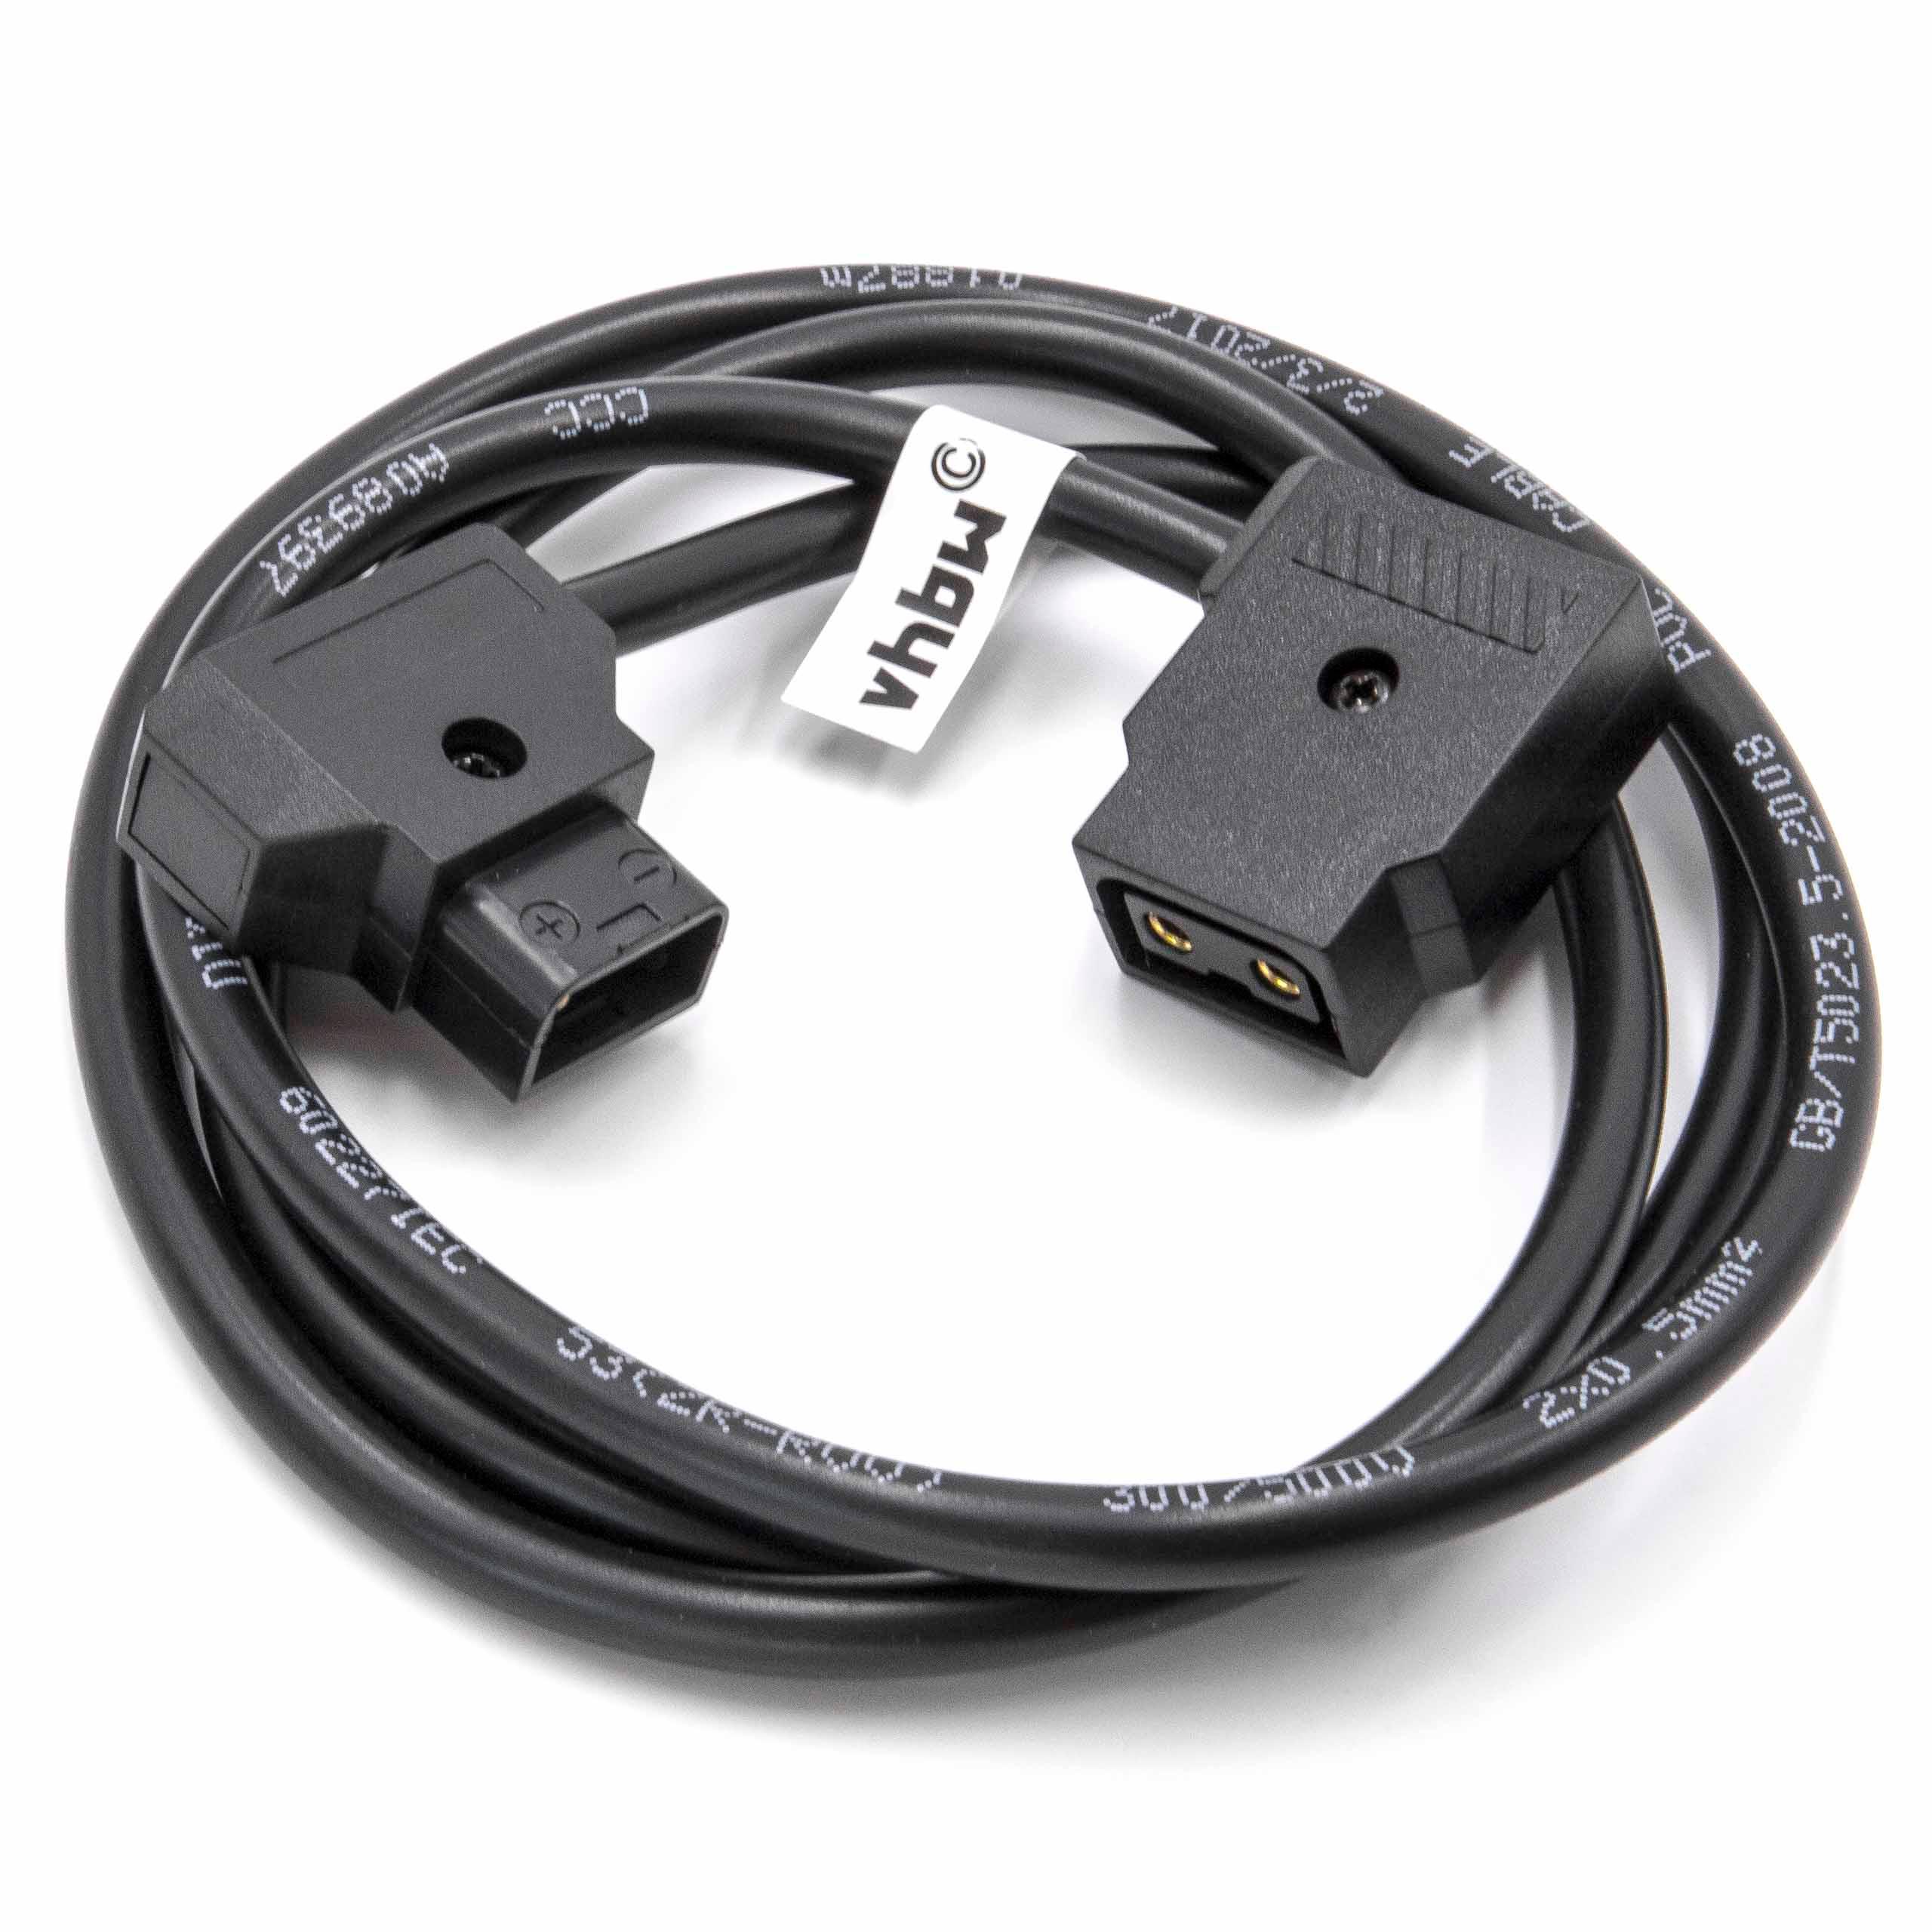 Câble adaptateur D-Tap (mâle) vers 1x D-Tap (f) pour appareil photo Anton Bauer D-Tap, Dionic - 1 m noir